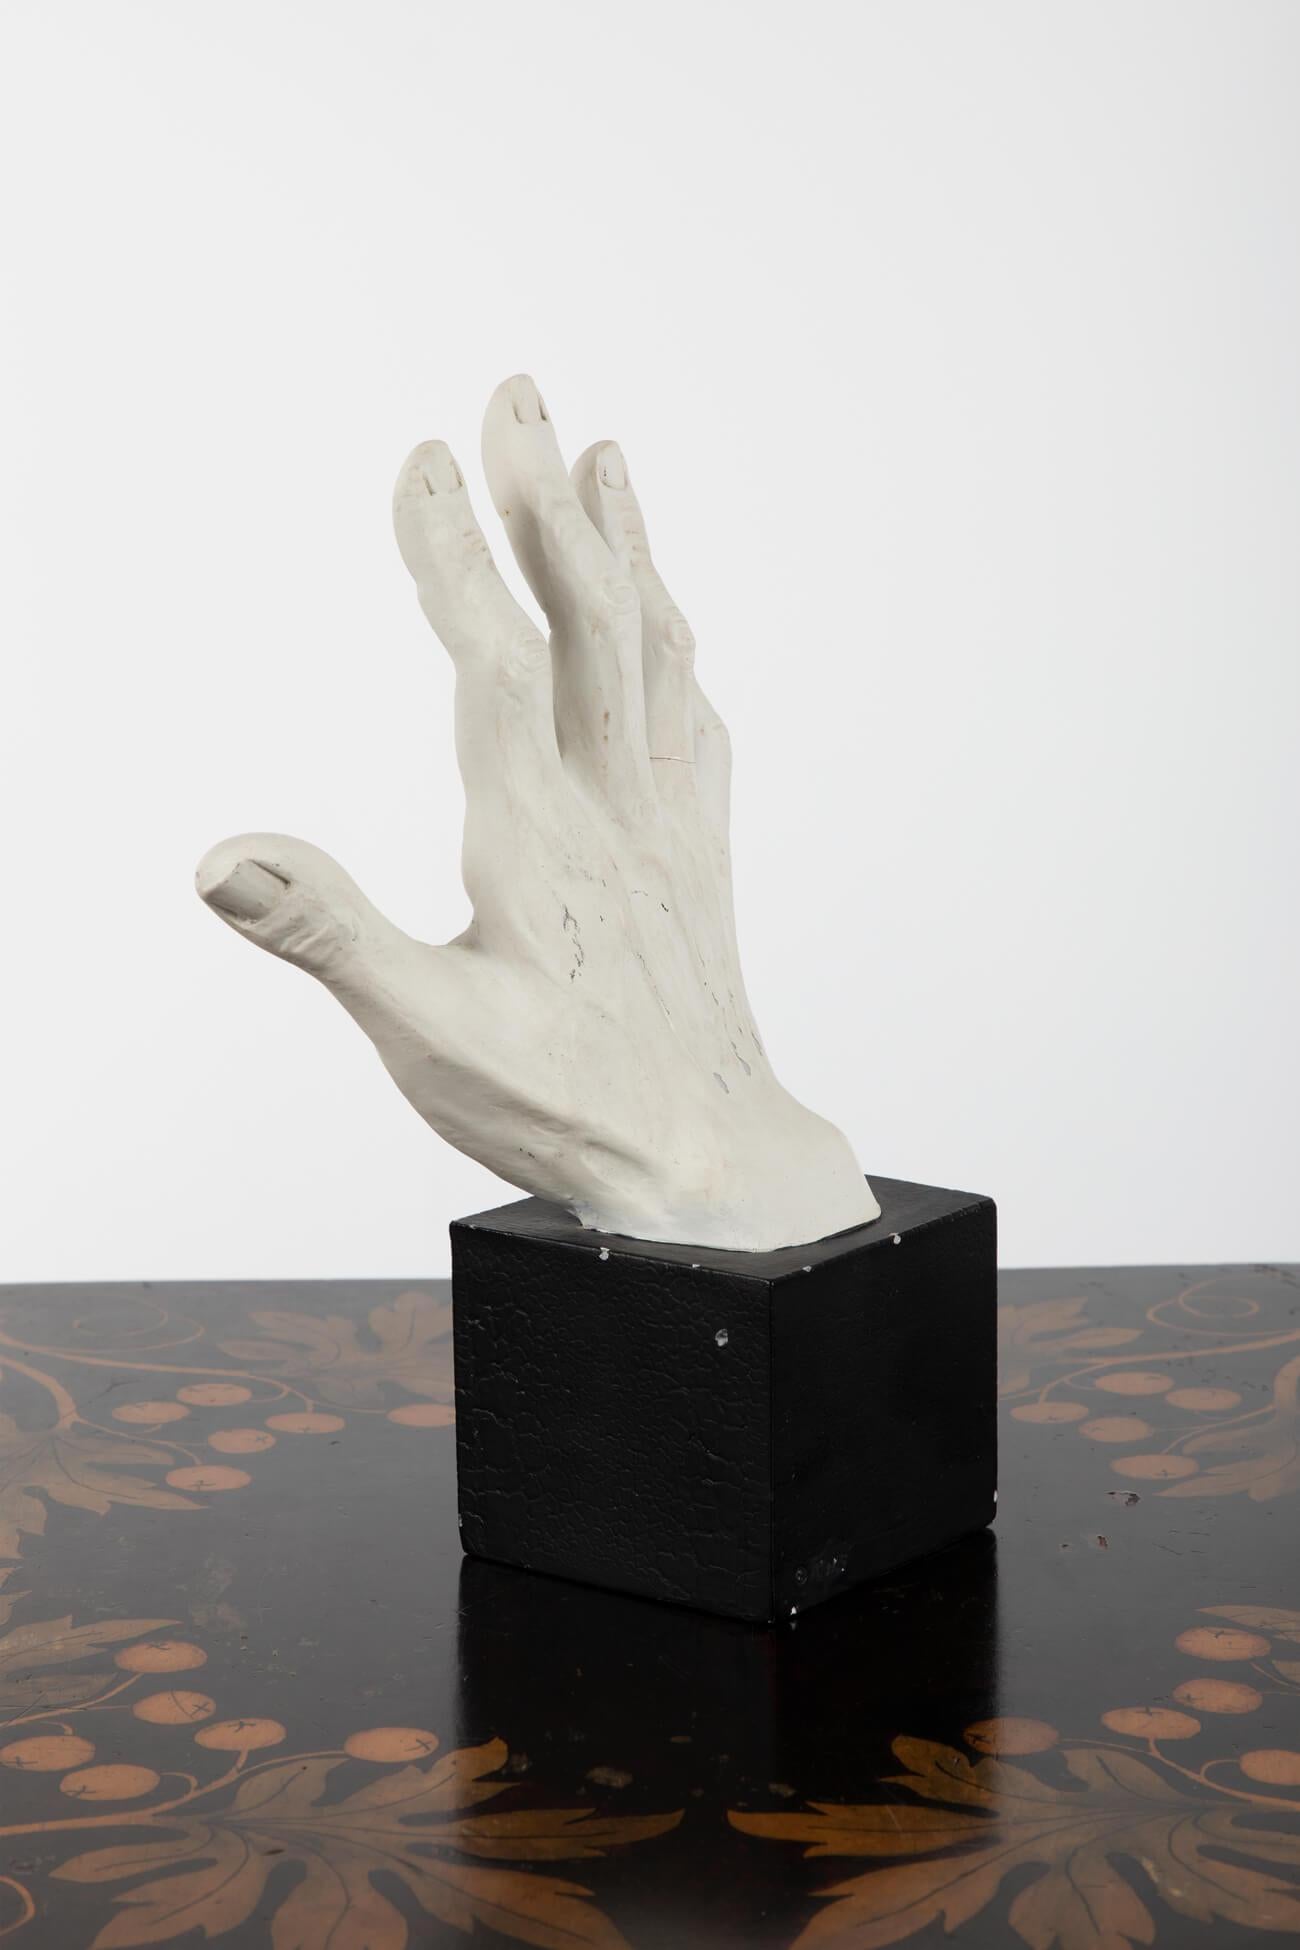 Anatomische Gipsstudie einer Männerhand, die auf einem Eichensockel sitzt. Mit wunderbarer Definition der Finger und der Handfläche. 
Britisch, frühes 20. Jahrhundert.

Zusätzliche Informationen:
H 27 cm  (H 10,6 Zoll)
B 15 cm  (W 5,9 Zoll)
D 9 cm  